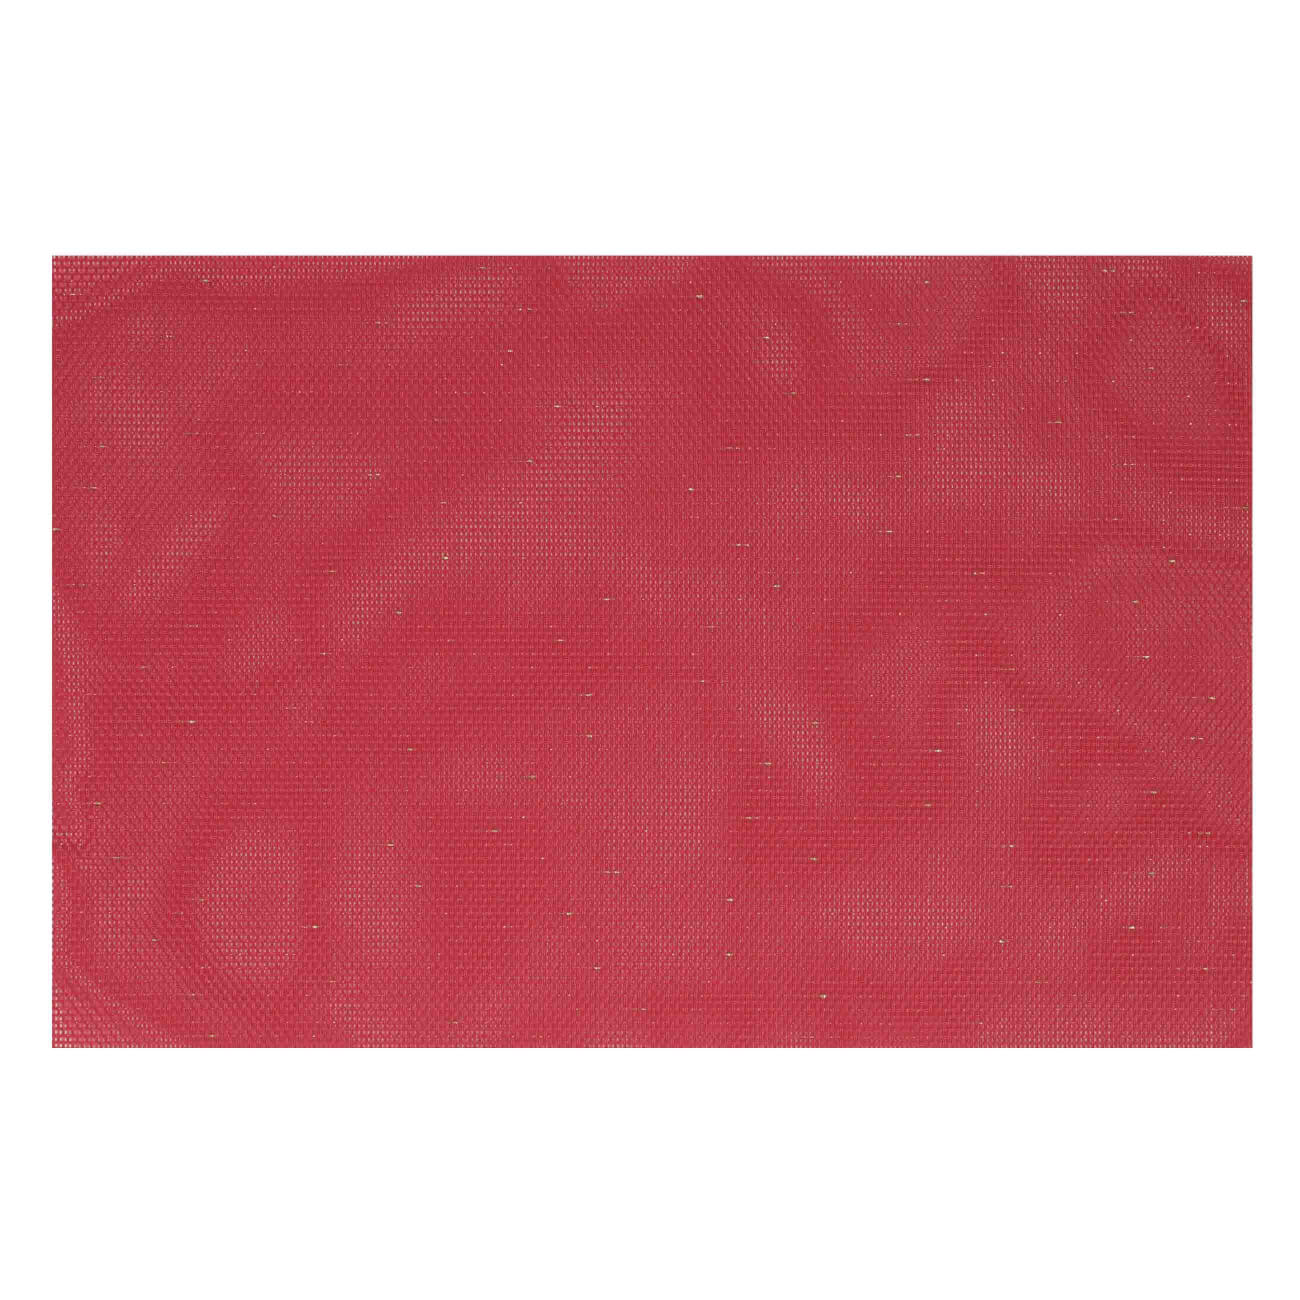 Салфетка под приборы, 30х45 см, ПВХ/полиэстер, прямоугольная, красная, Solid салфетка под приборы 30х45 см пвх полиэстер прямоугольная красная solid